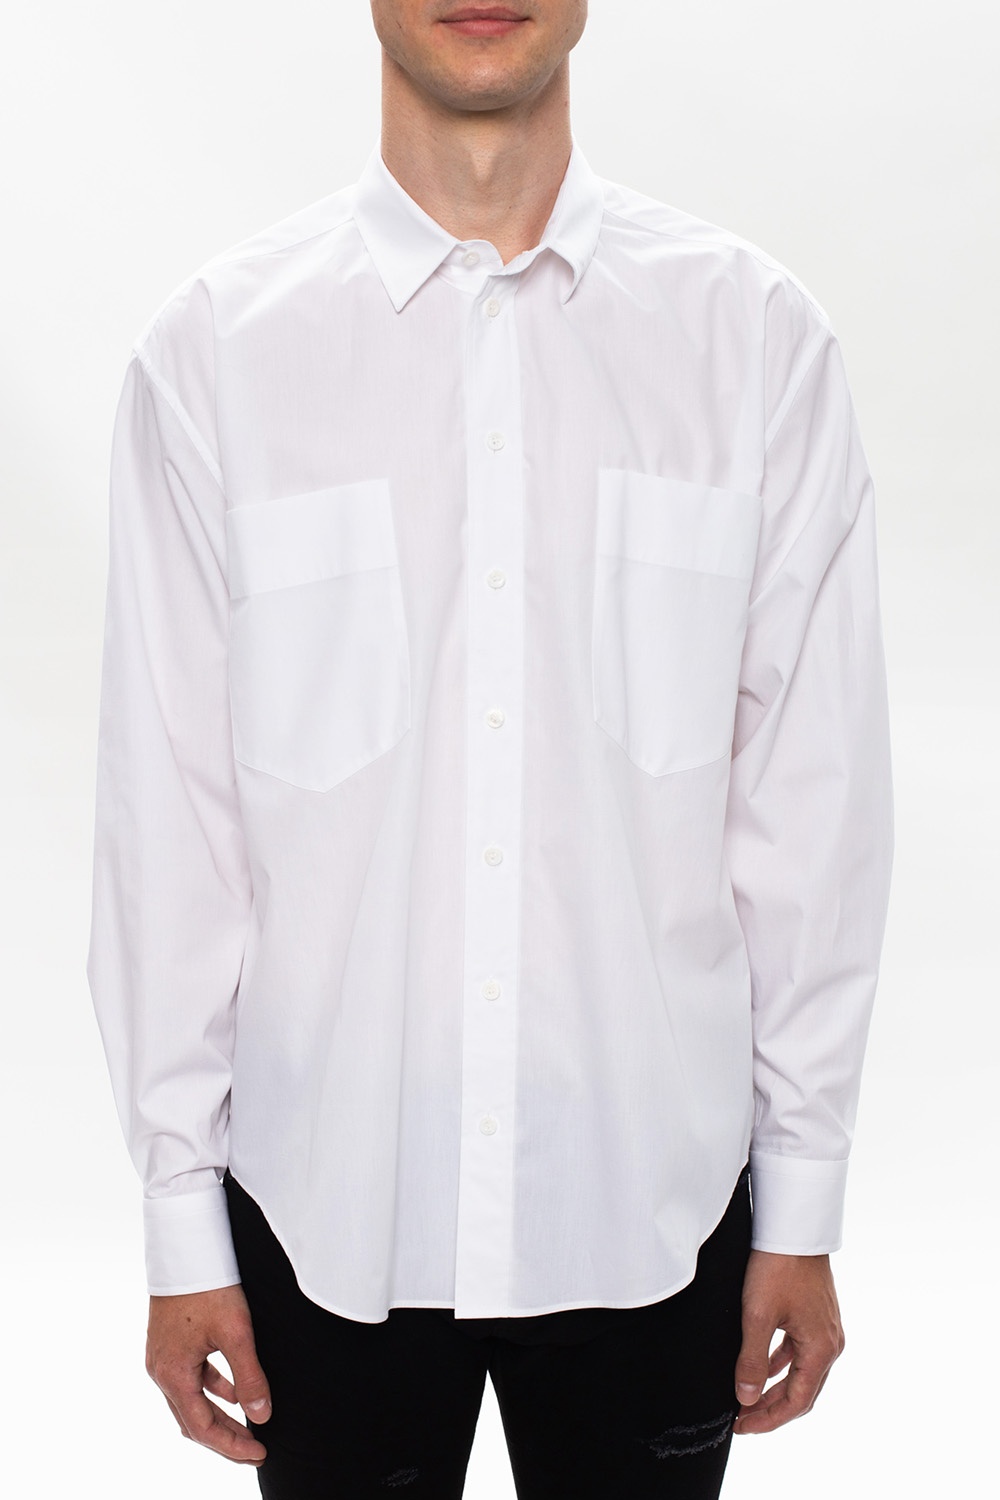 Moschino Cotton shirt